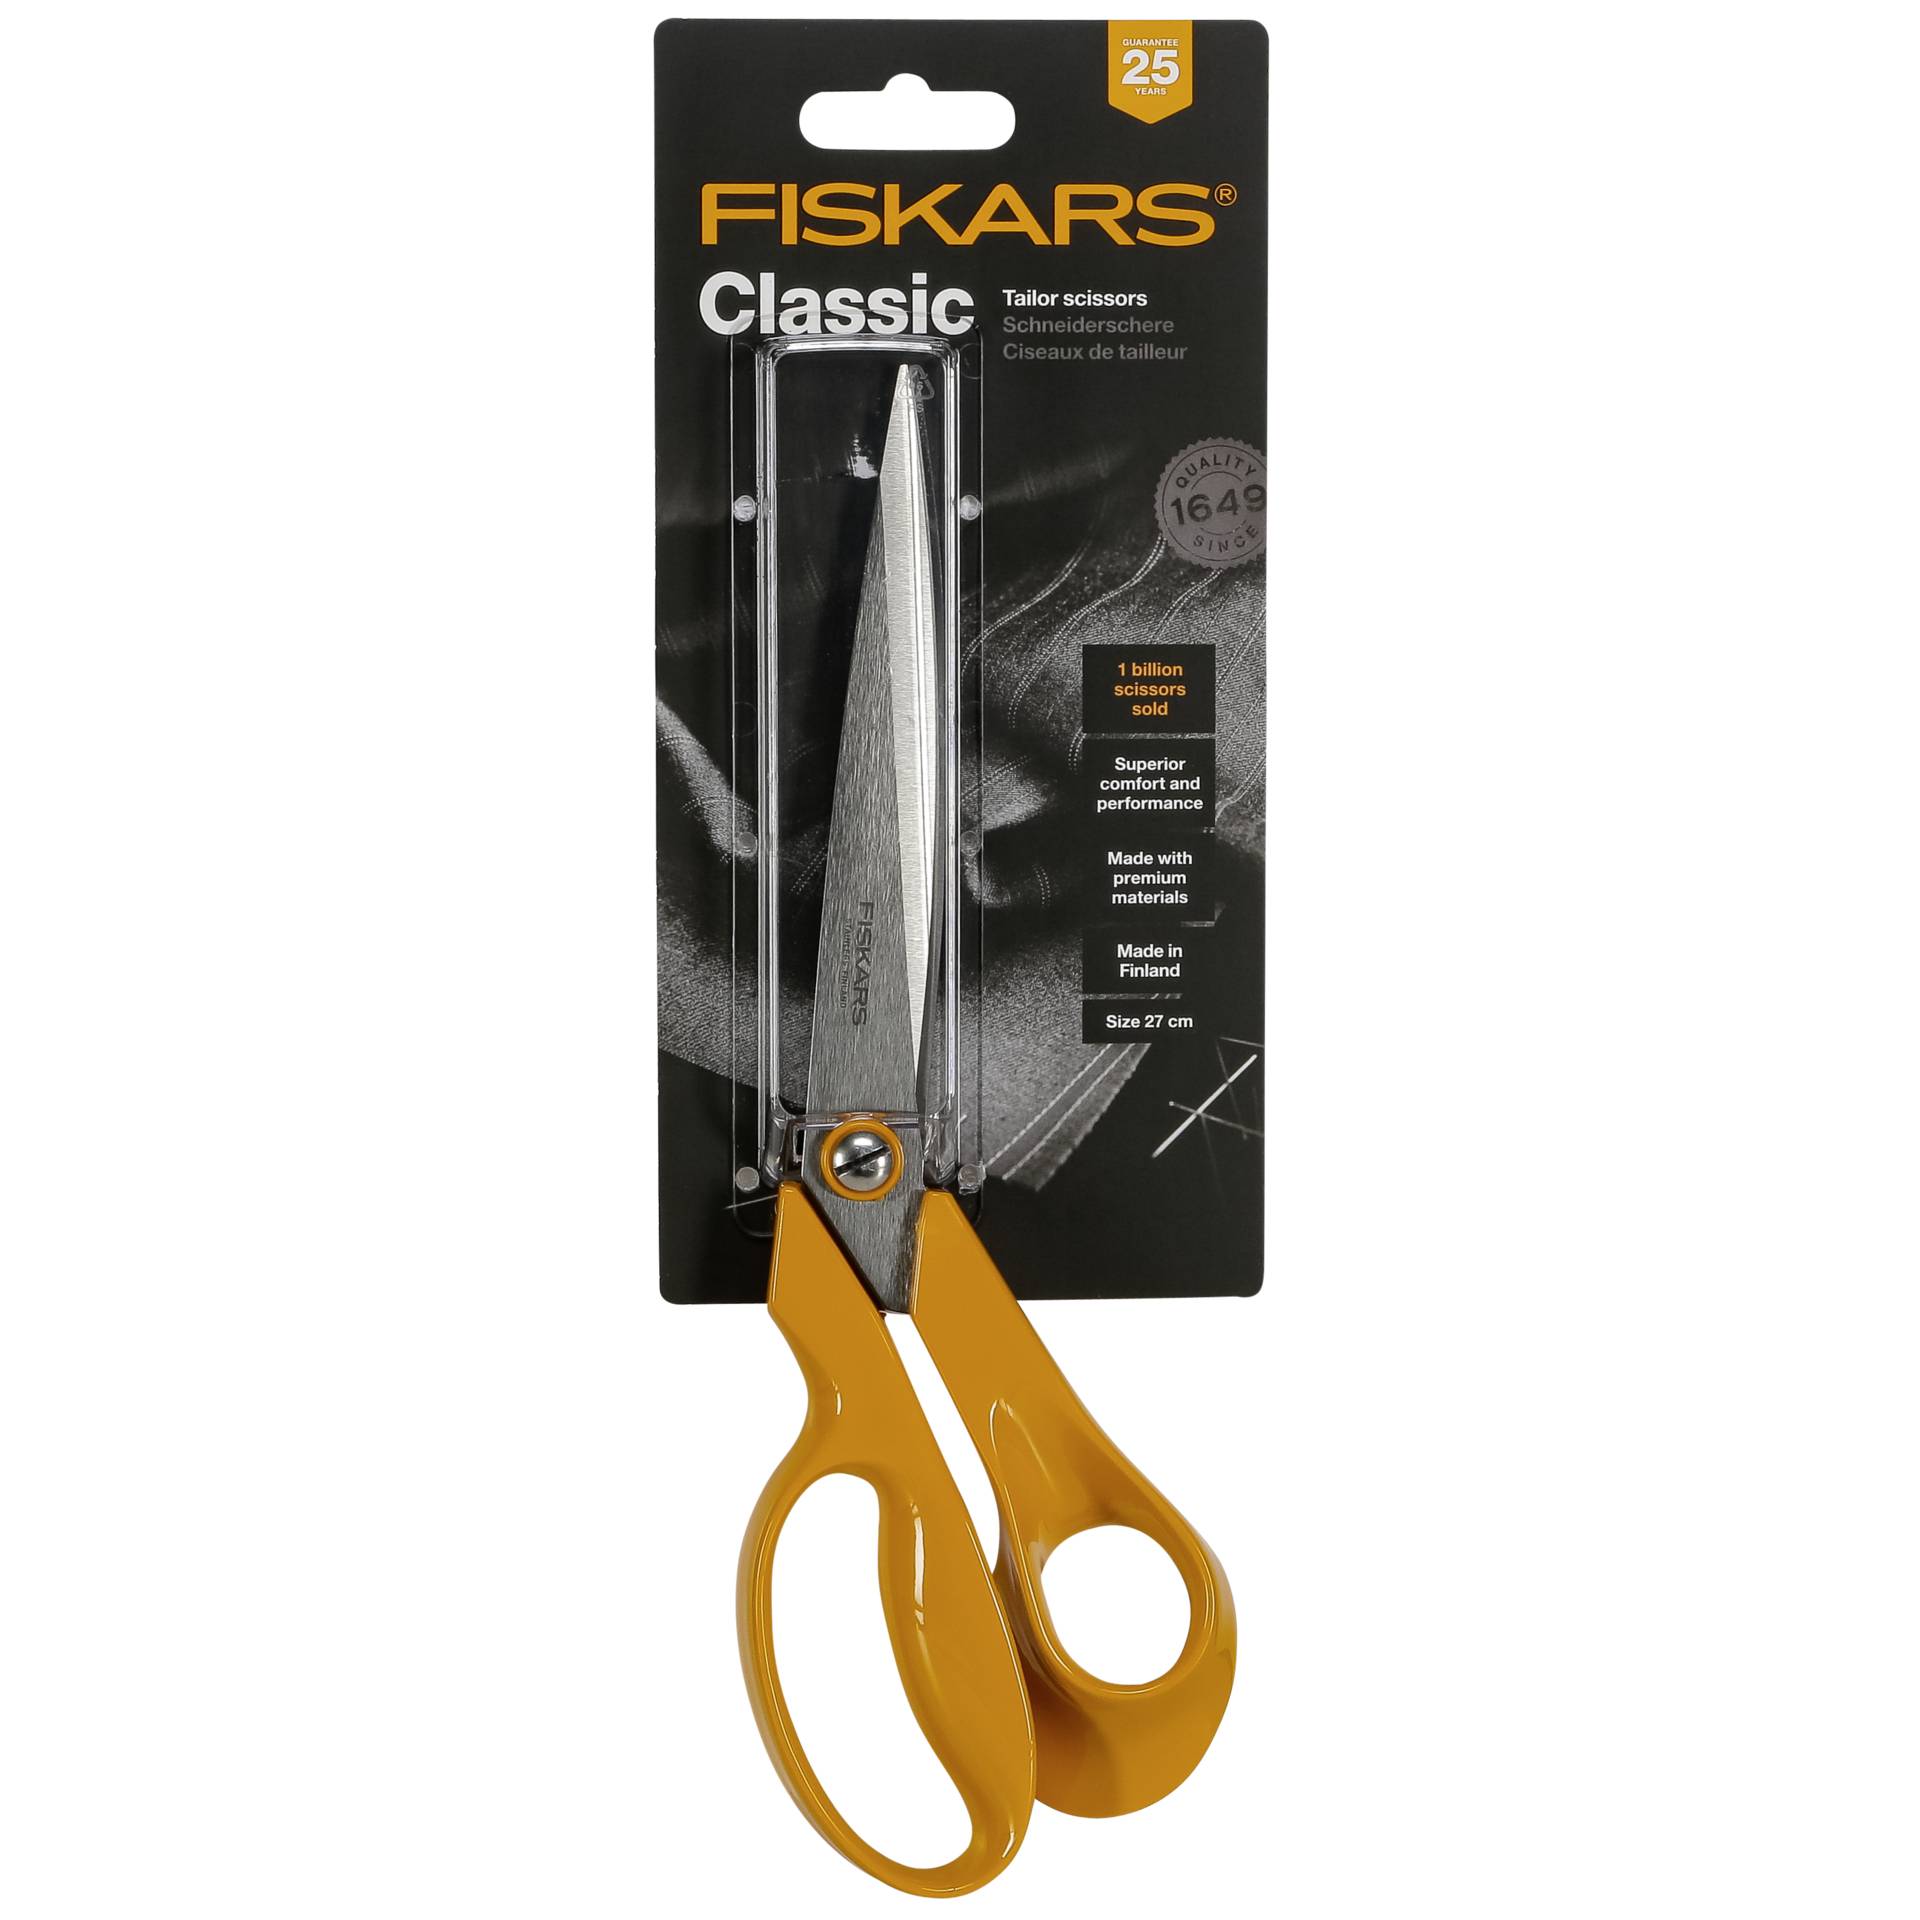 Fiskars Professional Scissors 27 cm